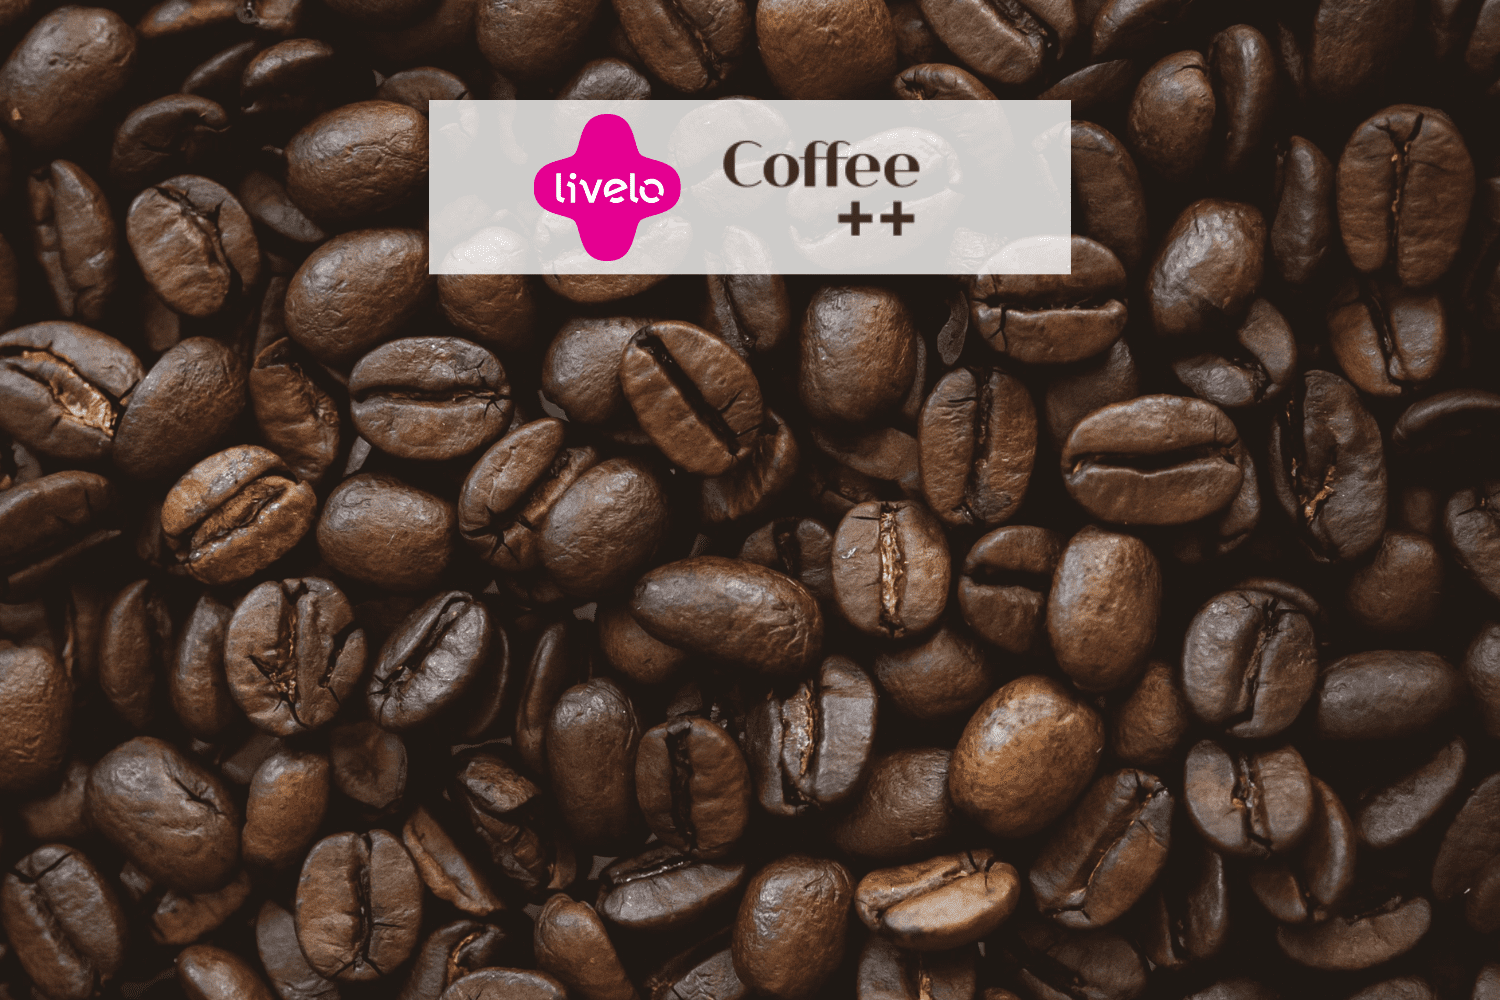 grãos de café com logo Livelo e Coffee++ 12 pontos Livelo